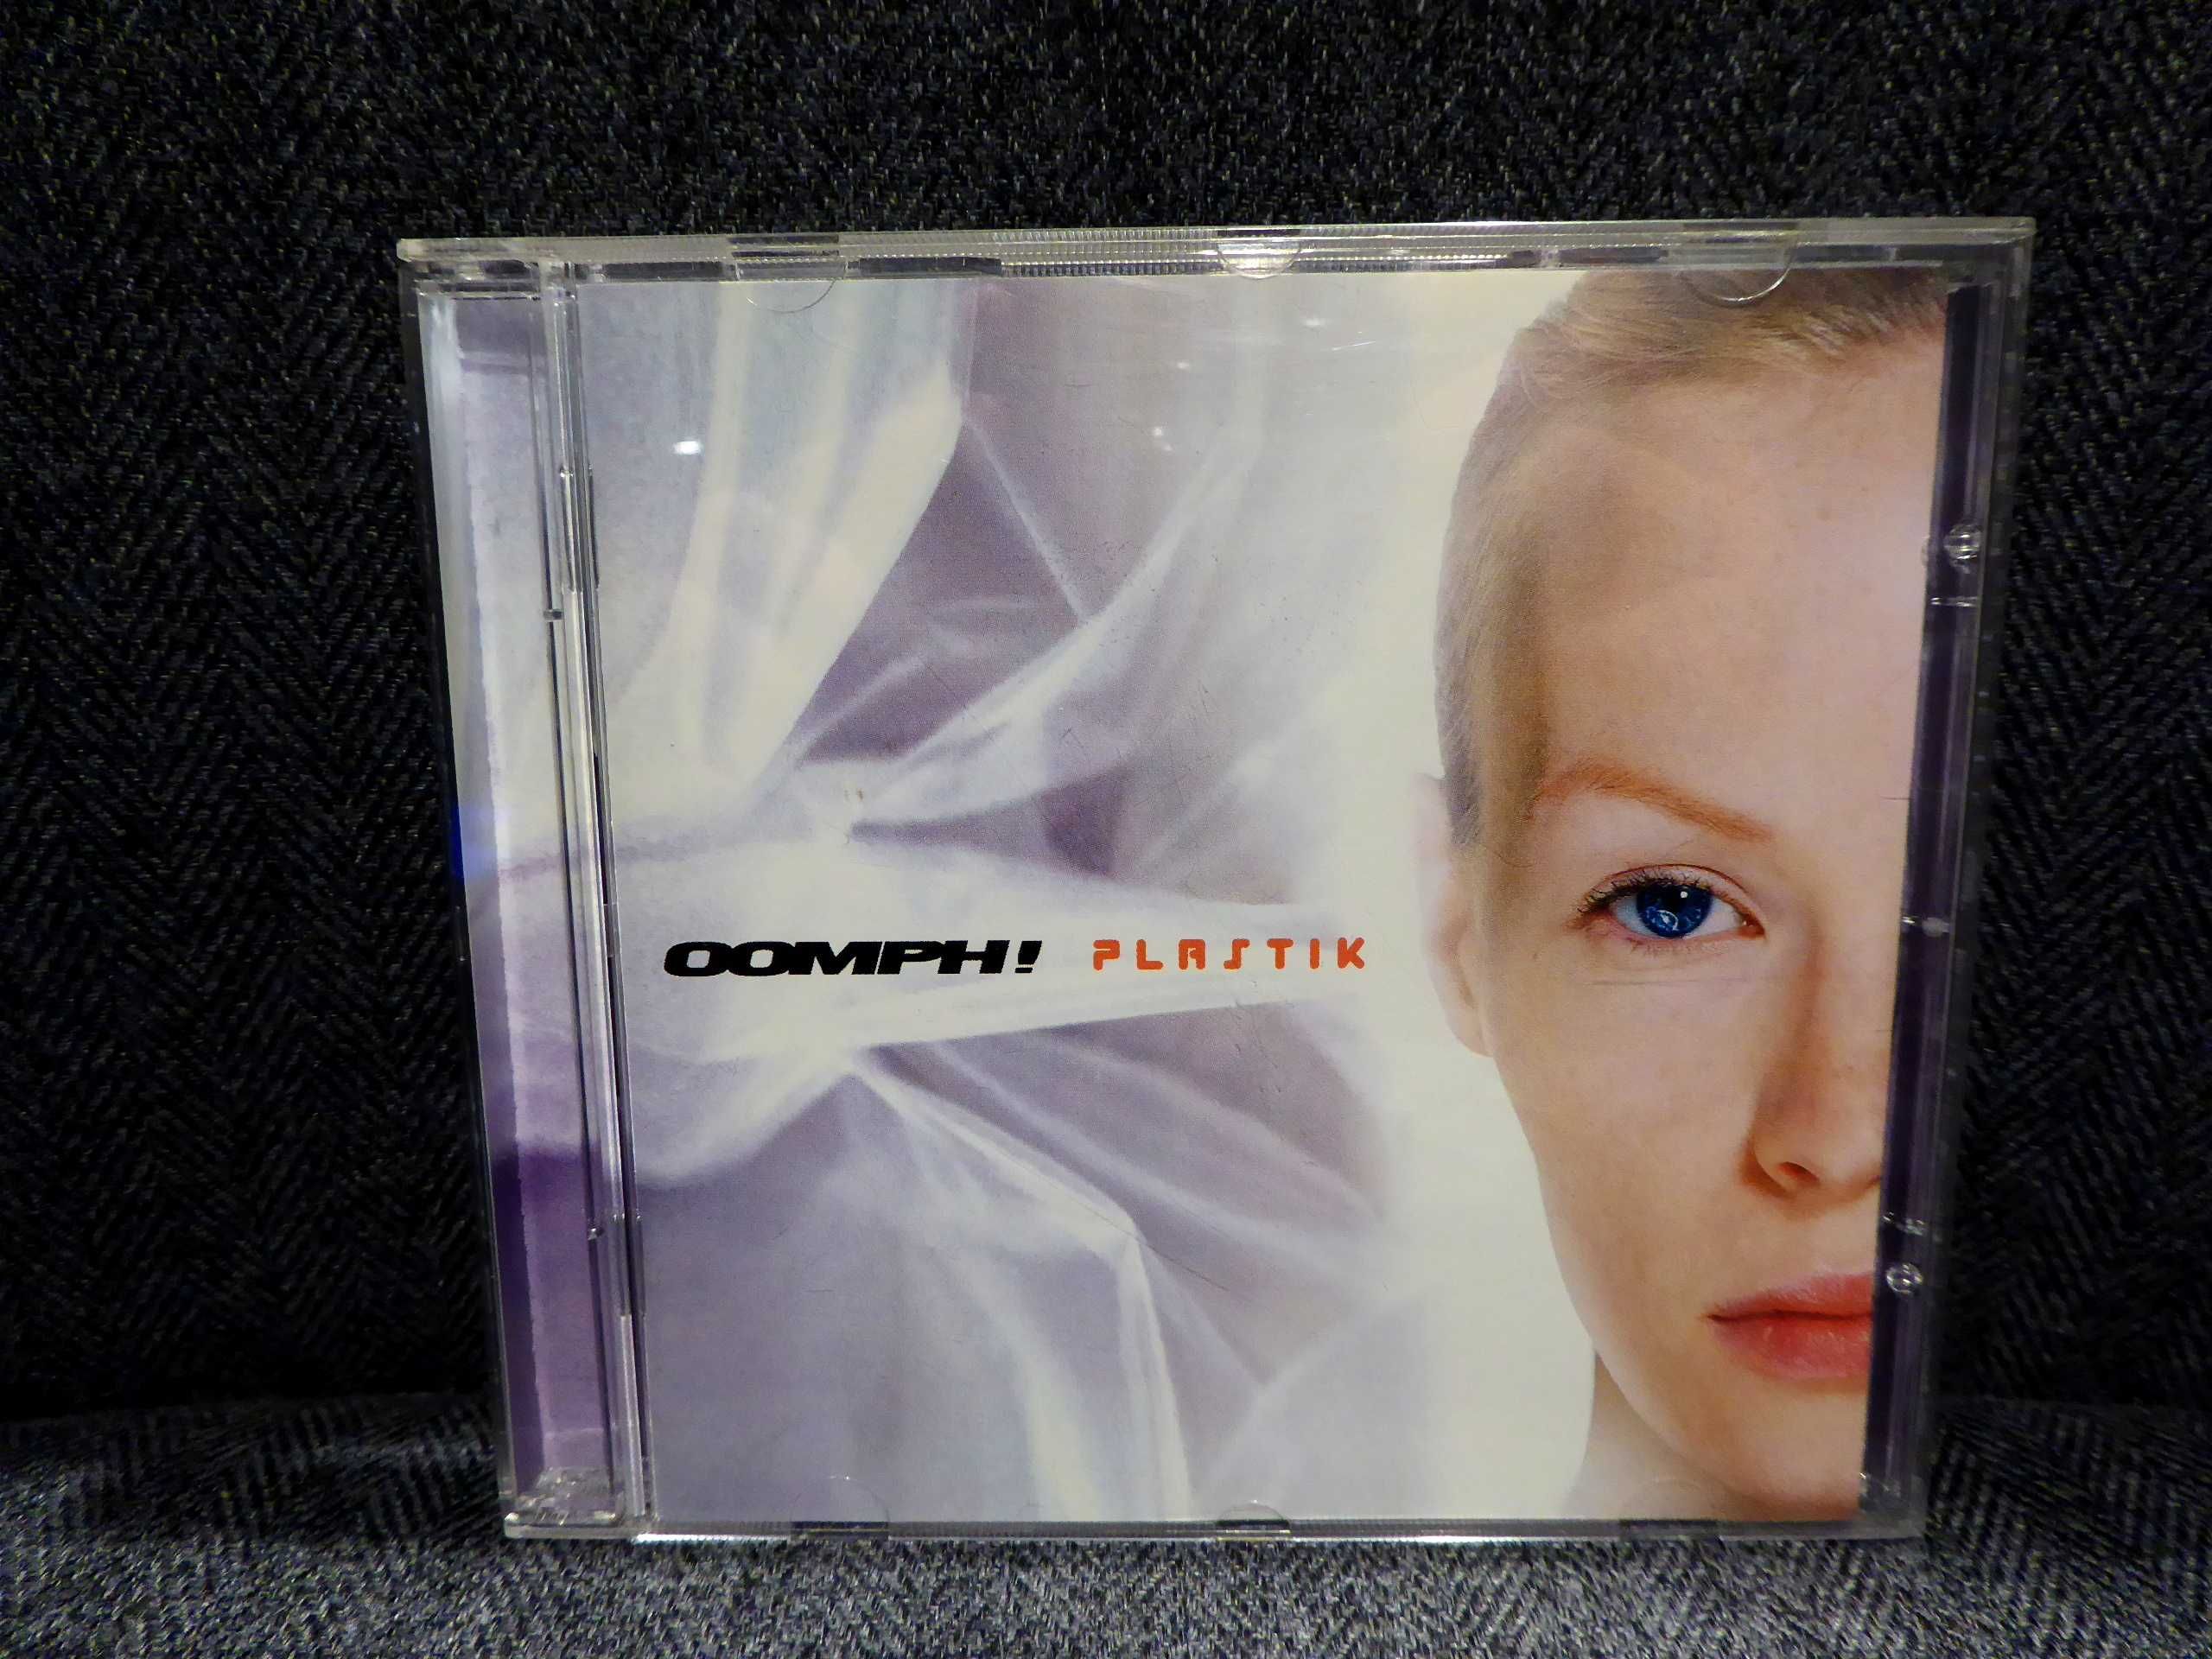 OOMPH! - Plastik CD album